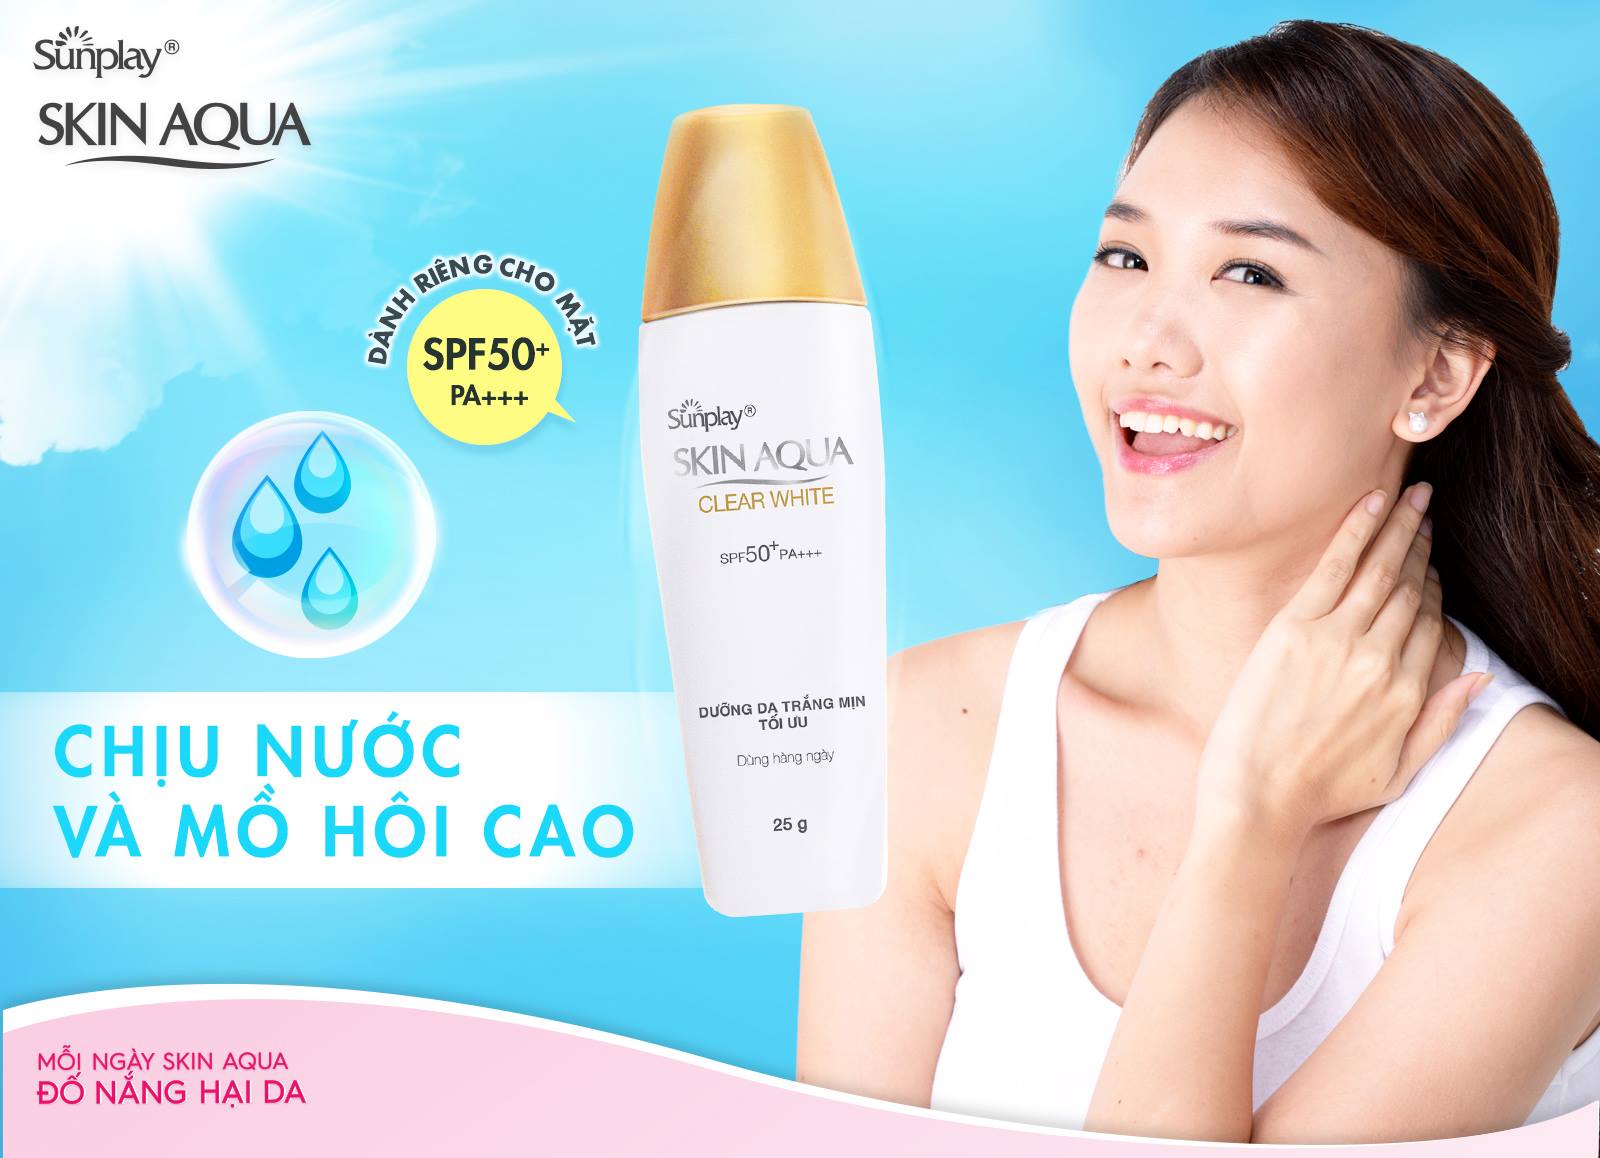 Sữa Chống Nắng Sunplay Dưỡng Da Sáng Mịn SPF50+ PA++++ Skin Aqua Clear White hiệu quả không